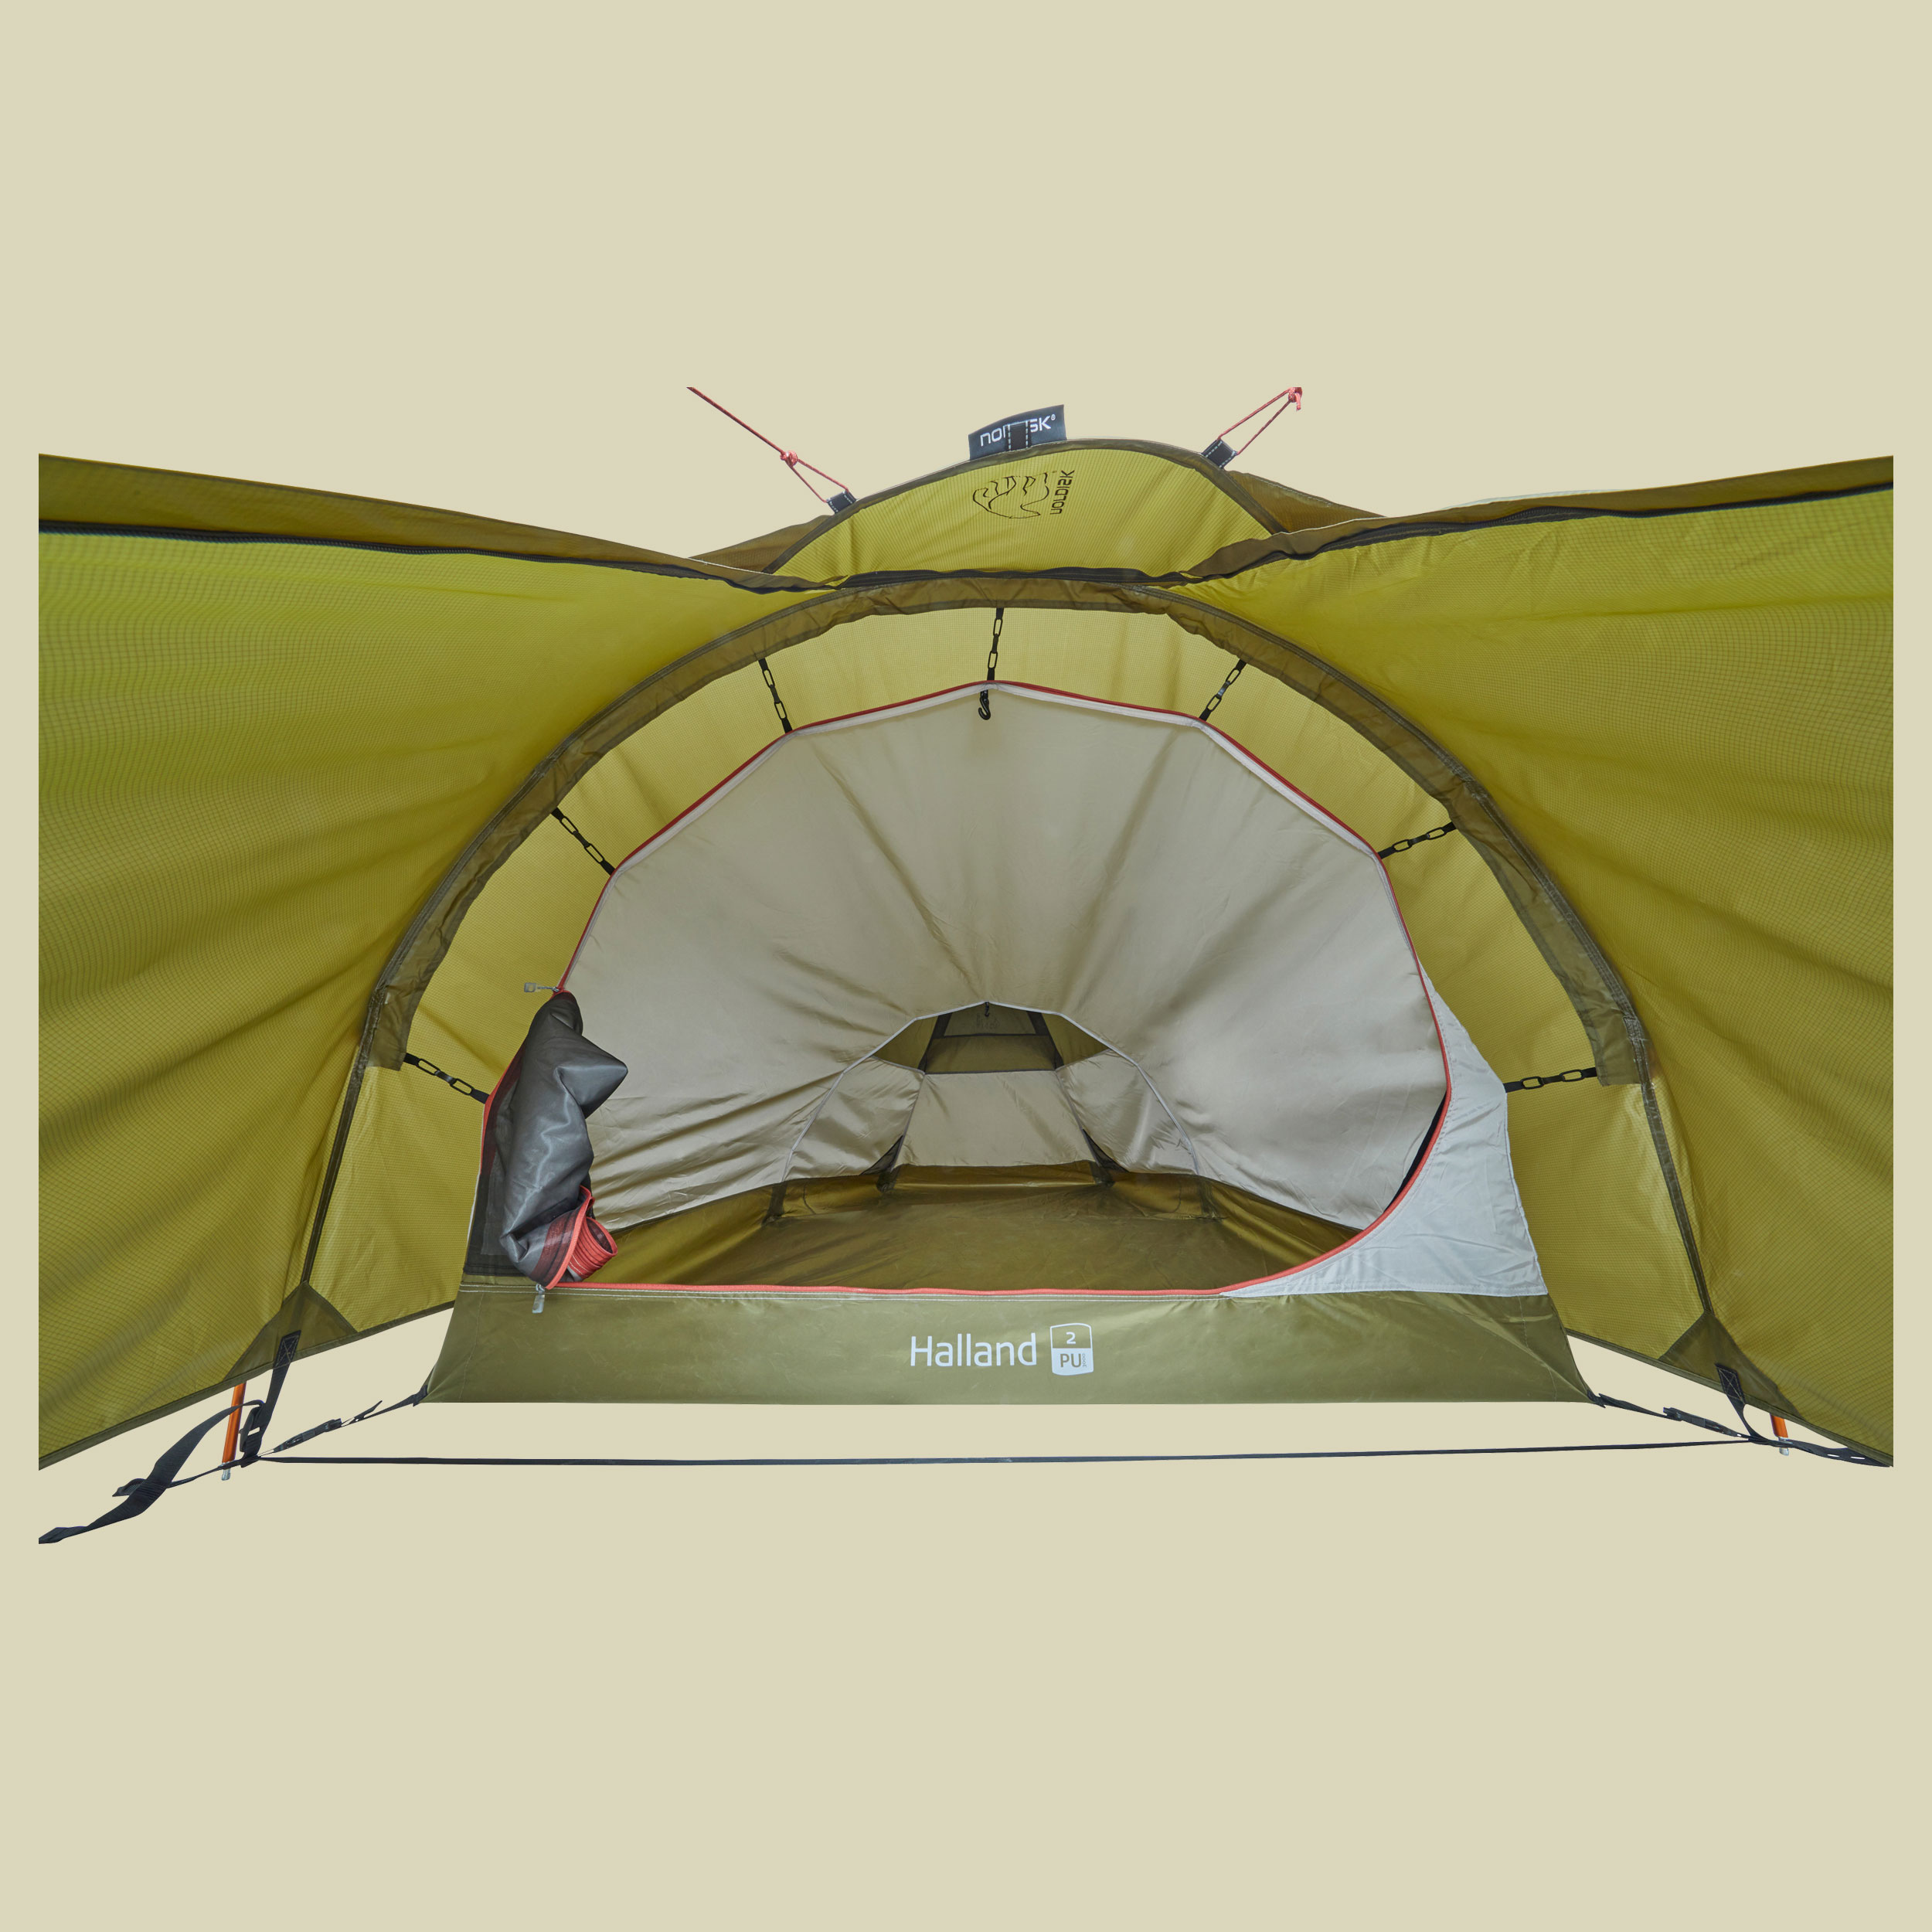 HALLAND 2 PU Tent 2-Personen Zelt Farbe dark olive